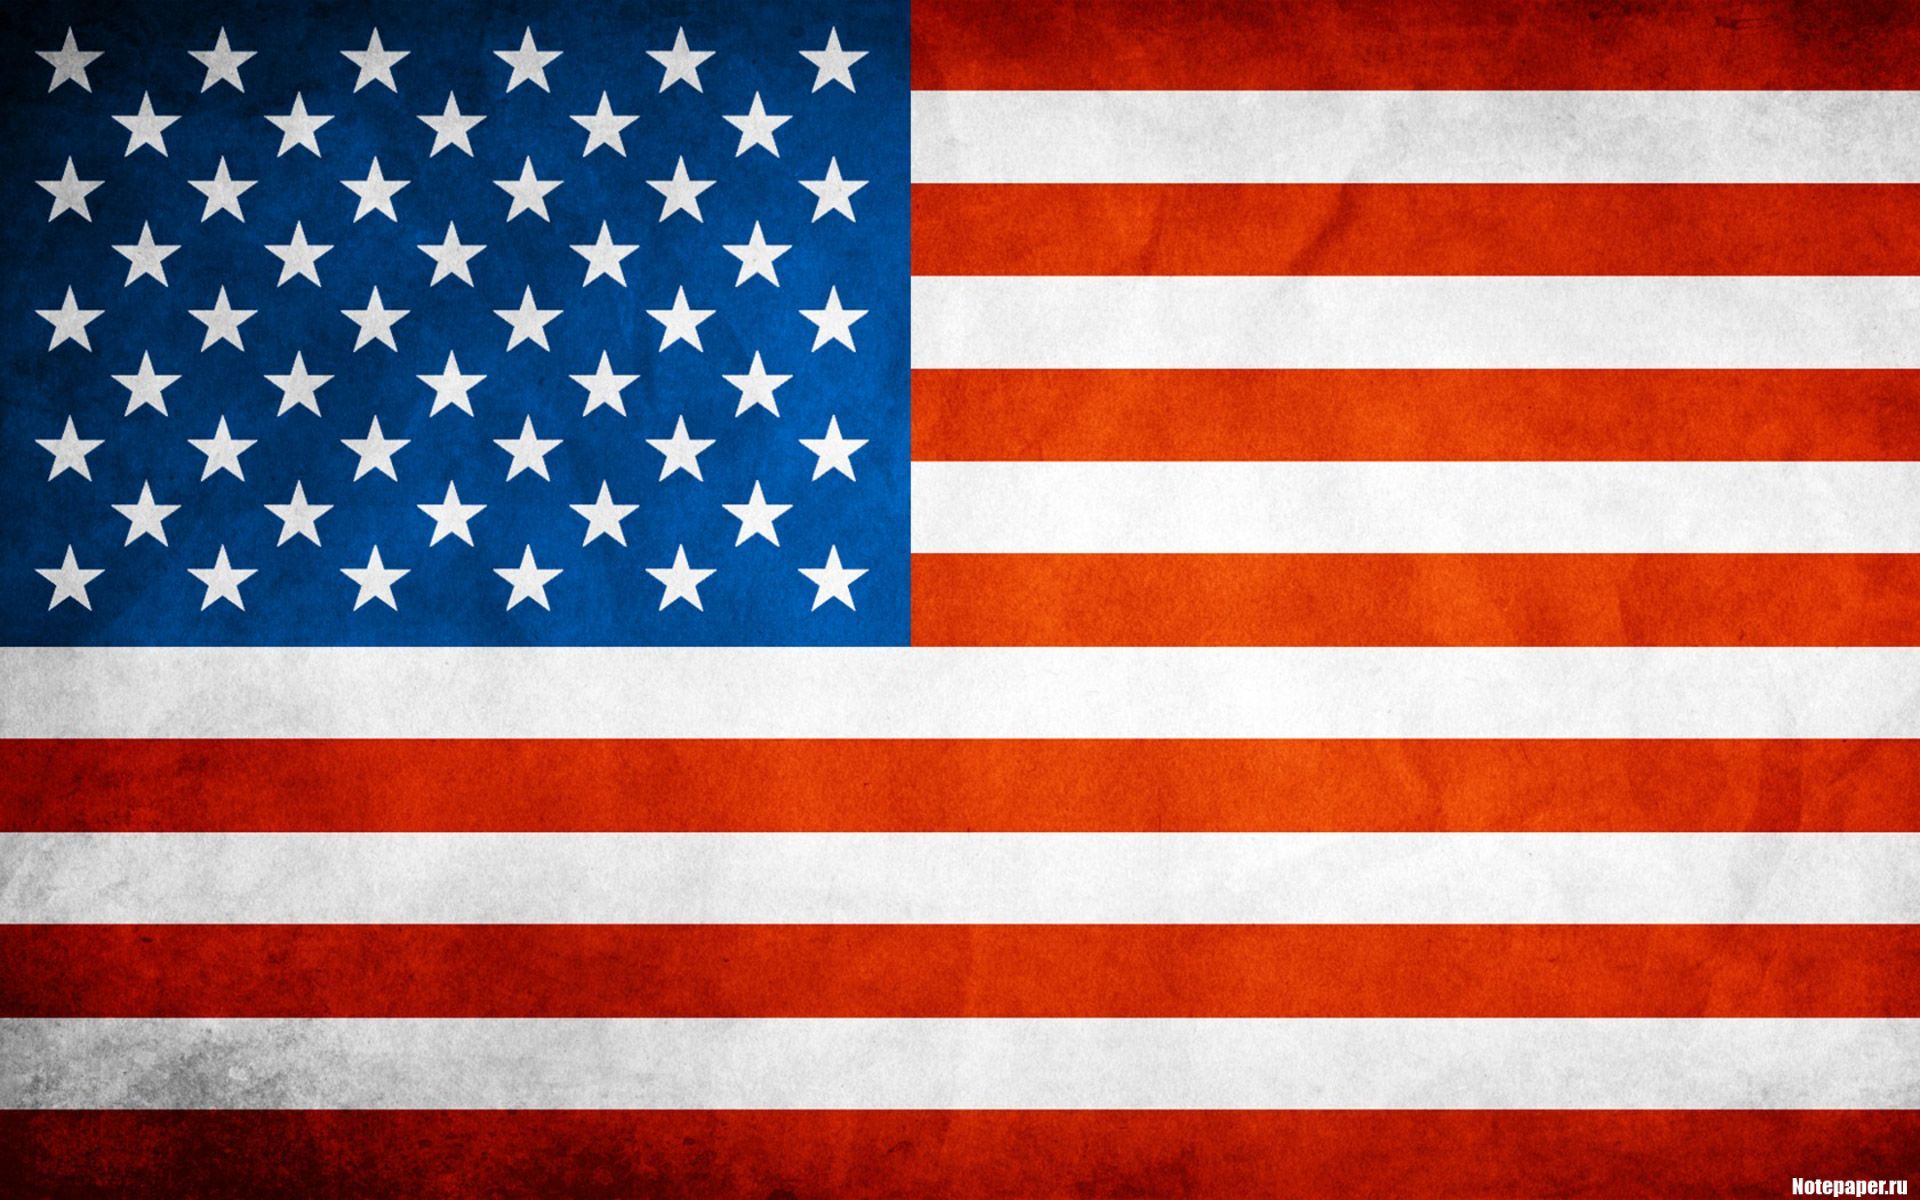 God Bless America. Usa flag wallpaper, American flag wallpaper, American flag wallpaper iphone